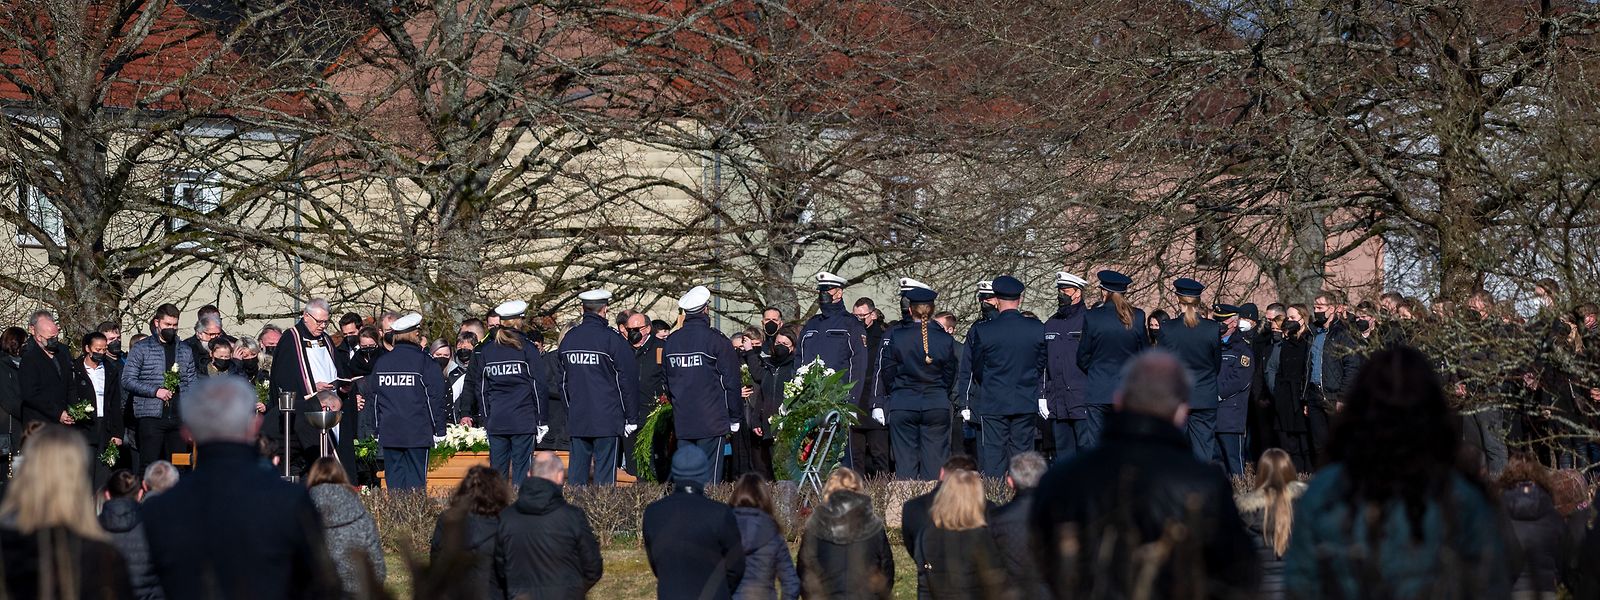 Trauergäste, darunter viele Polizisten, stehen am Grab des Polizeikommissars, der mit einer Kollegin am 31. Januar 2022 während einer Fahrzeugkontrolle bei Kusel in Rheinland-Pfalz erschossen wurde. 